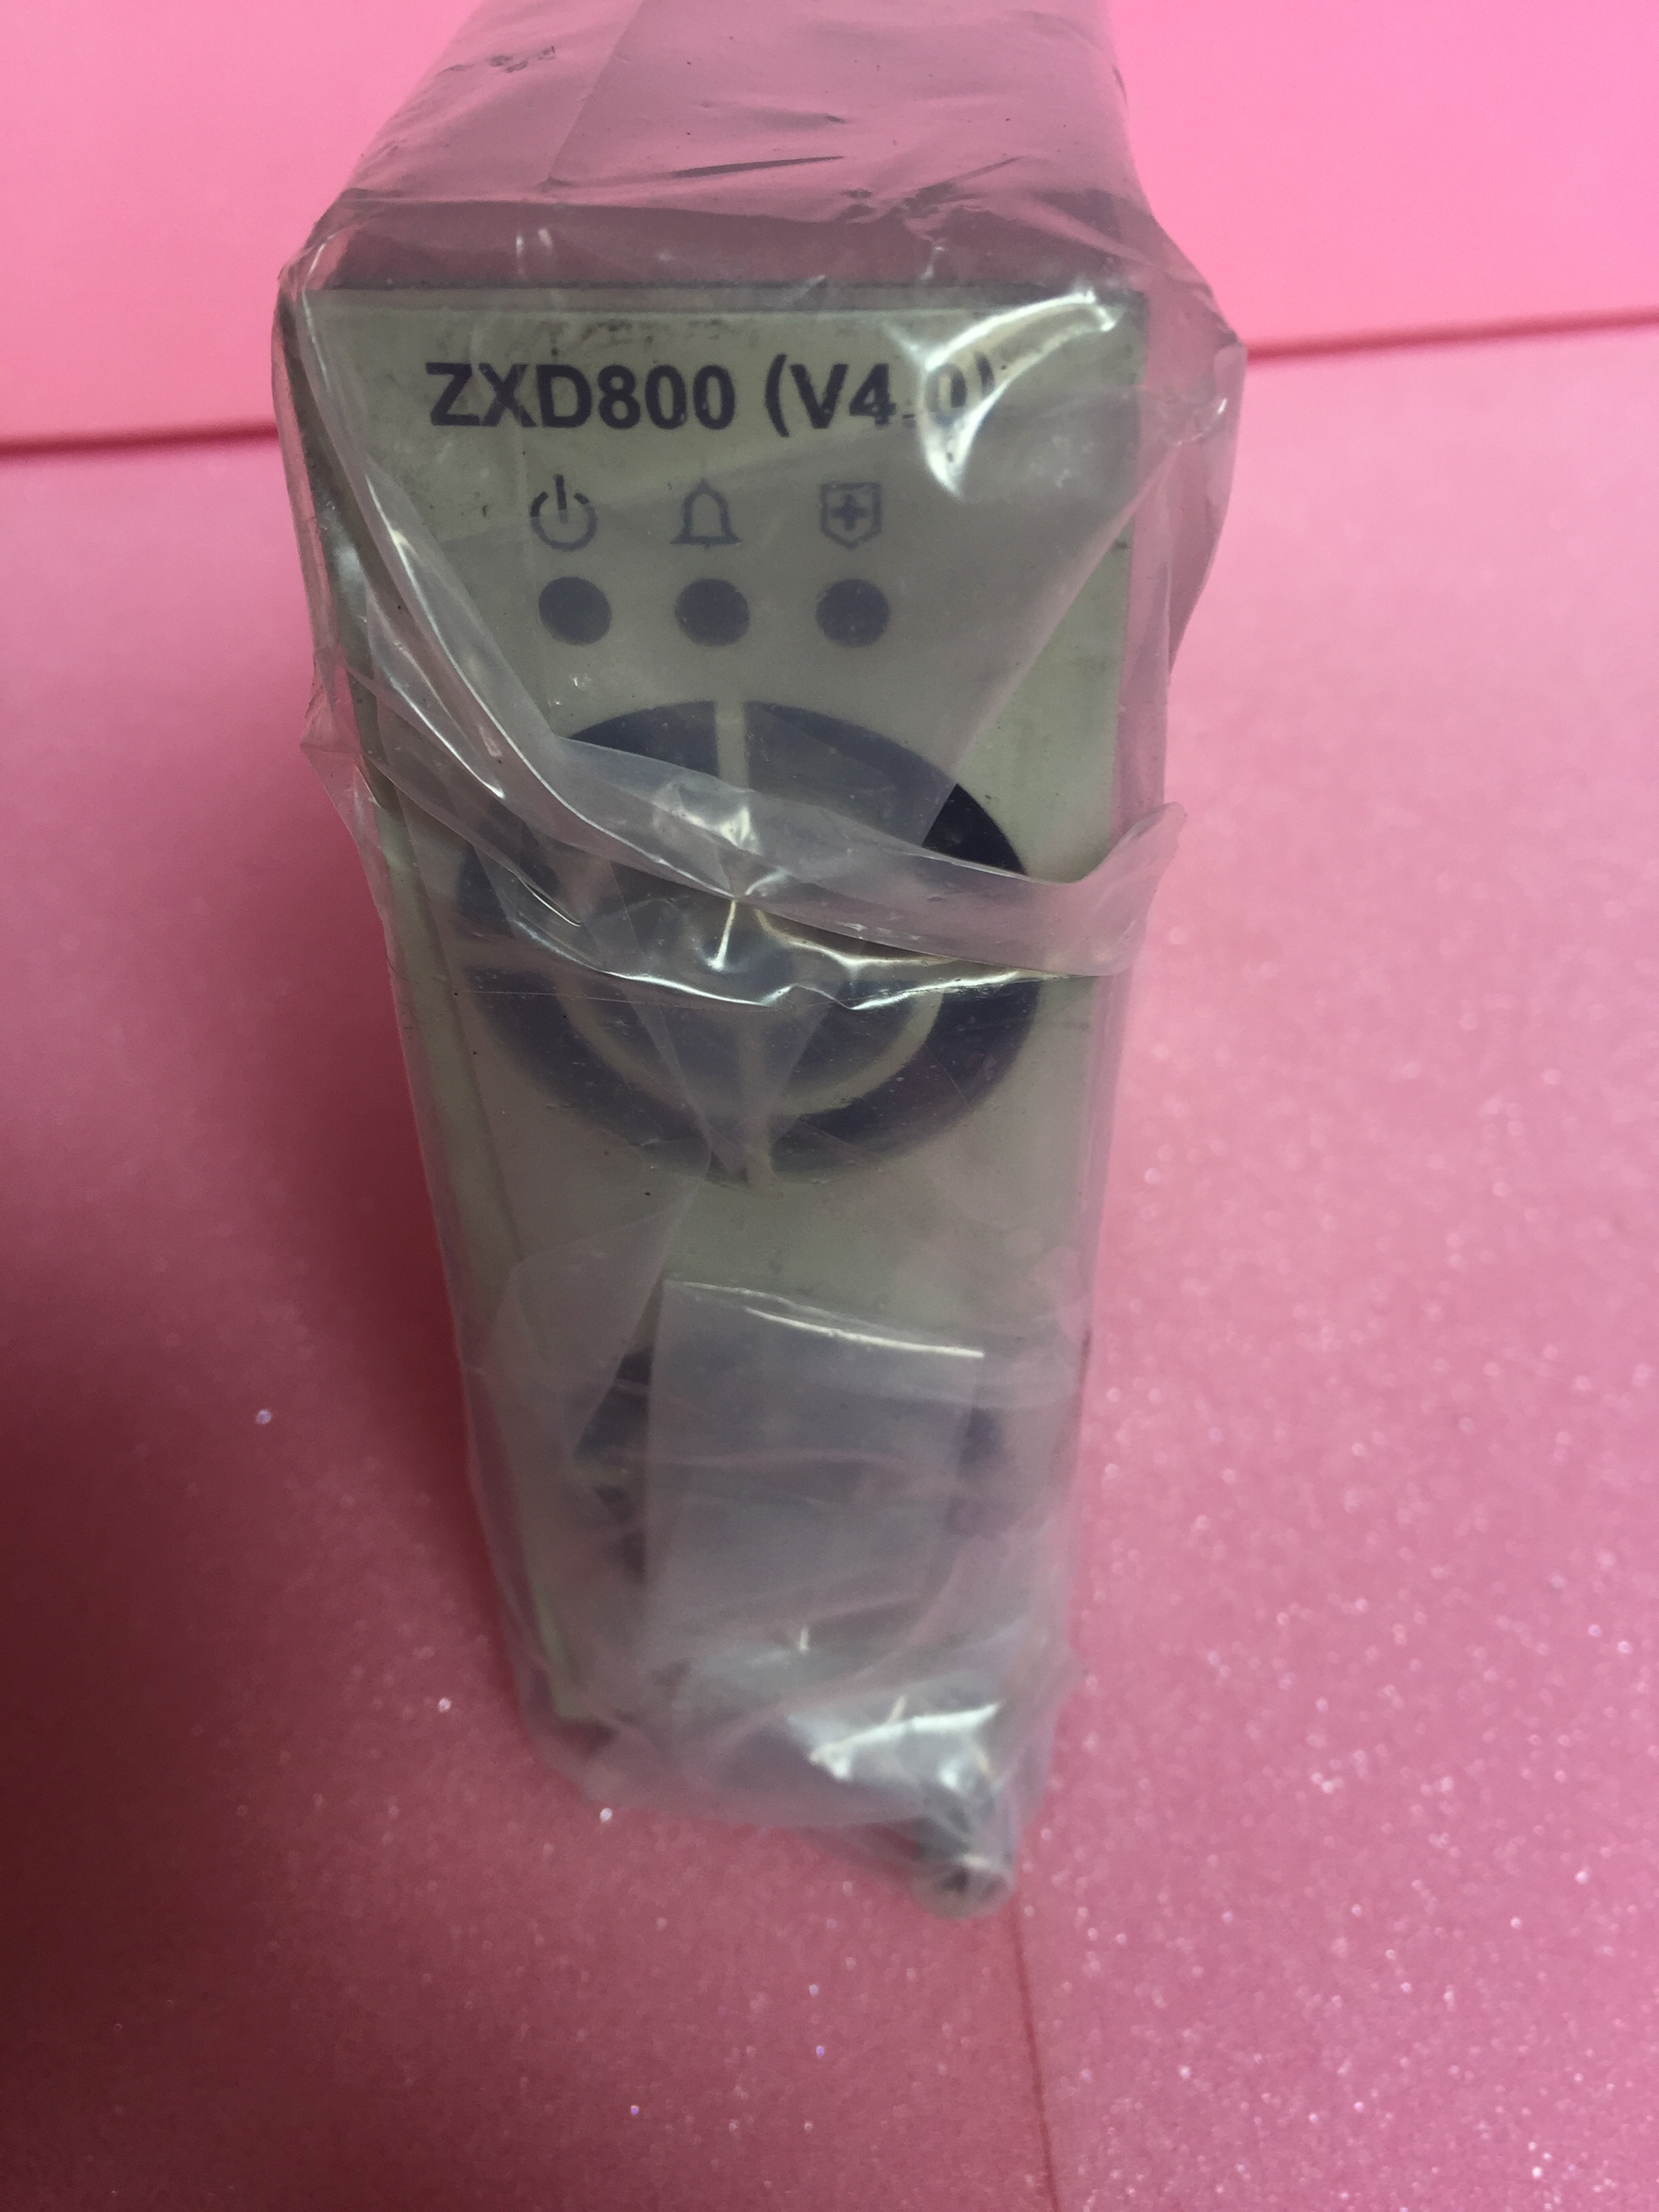 中兴ZXD800(V4.0)整流电源模块 中兴ZXD800,ZXD800,中兴整流模块,中兴电源模块